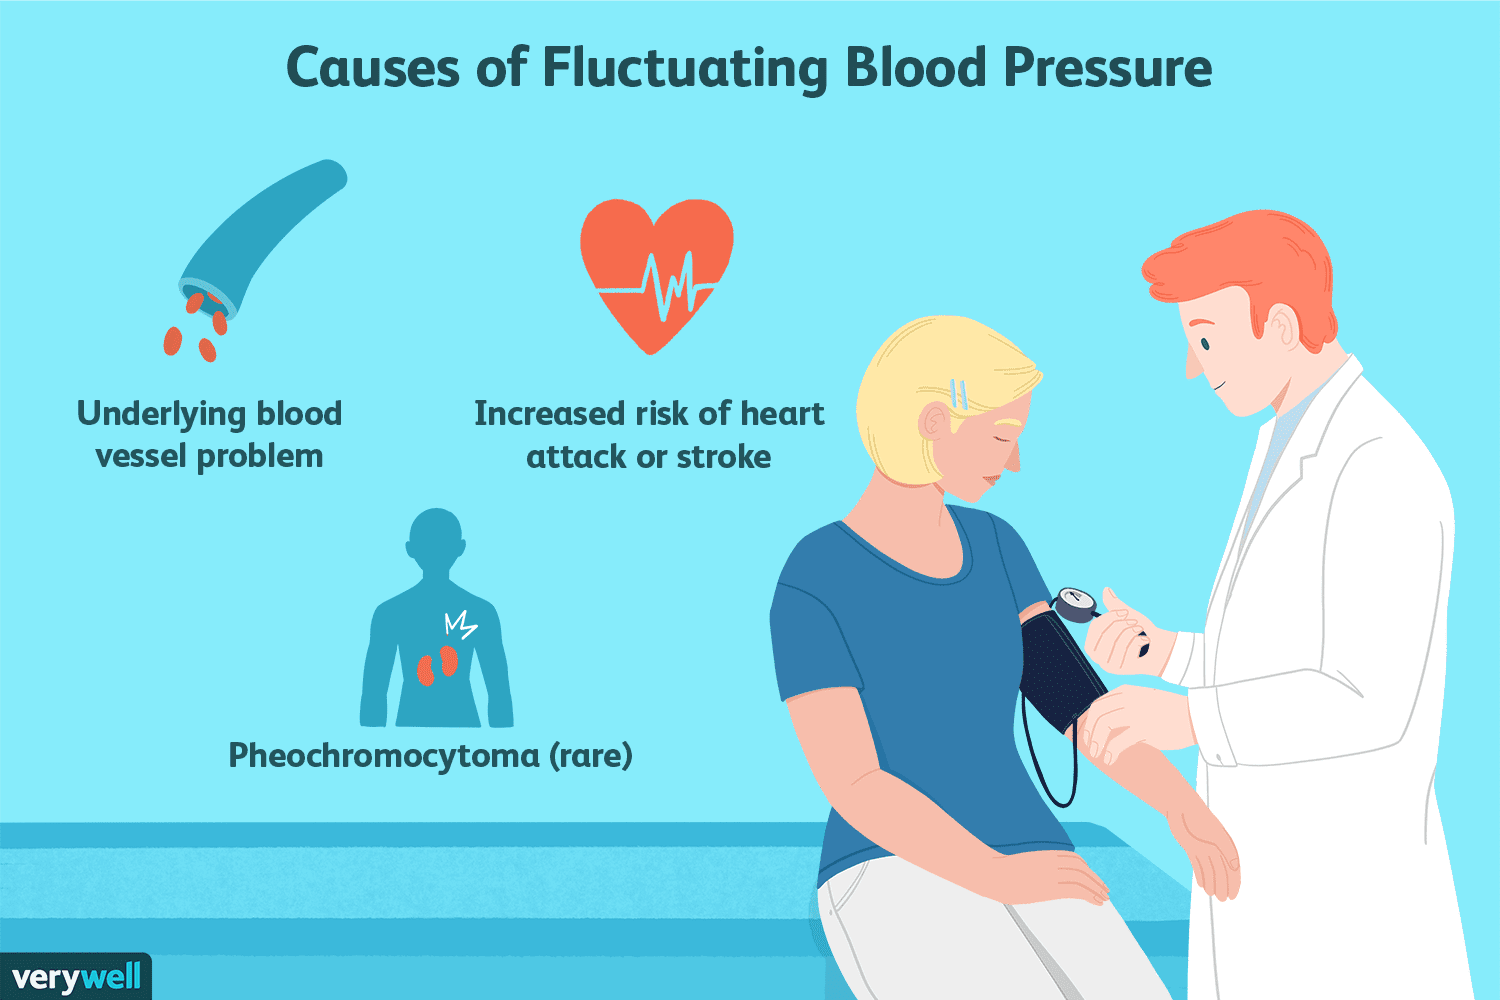 یکی  از علل بروز فشار خون بالا بیماری فئوکروموسیتوم است